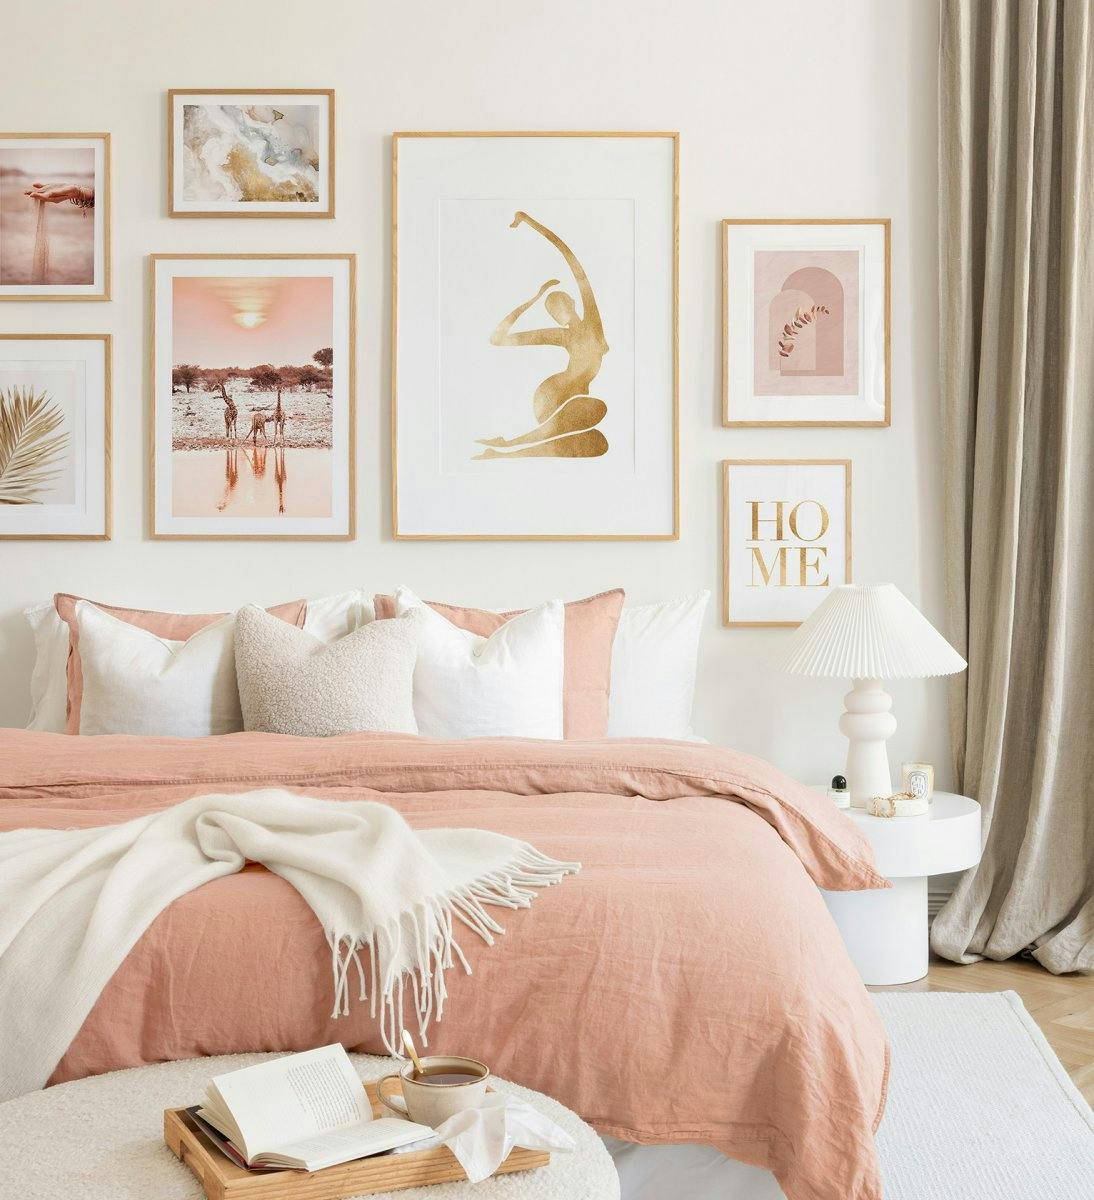 En billedvæg med bløde lyserøde og beige nuancer i egetræsrammer skaber en harmonisk stemning i dit soveværelse.